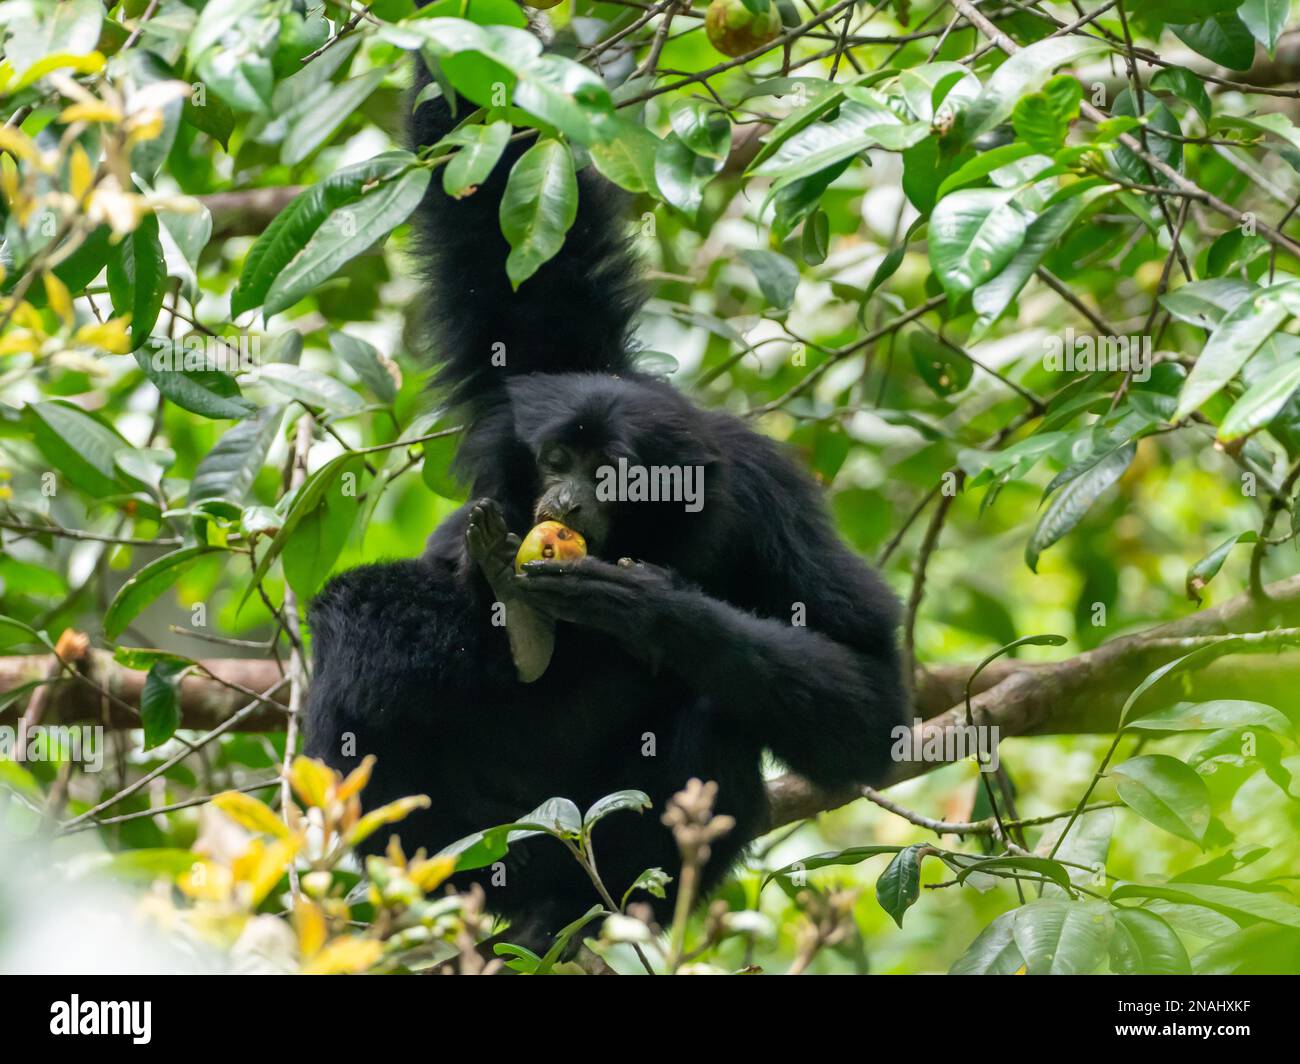 Siamang, Symphalange syndactylus, la plus grande espèce de gibbons, et espèces menacées de Malaisie Banque D'Images